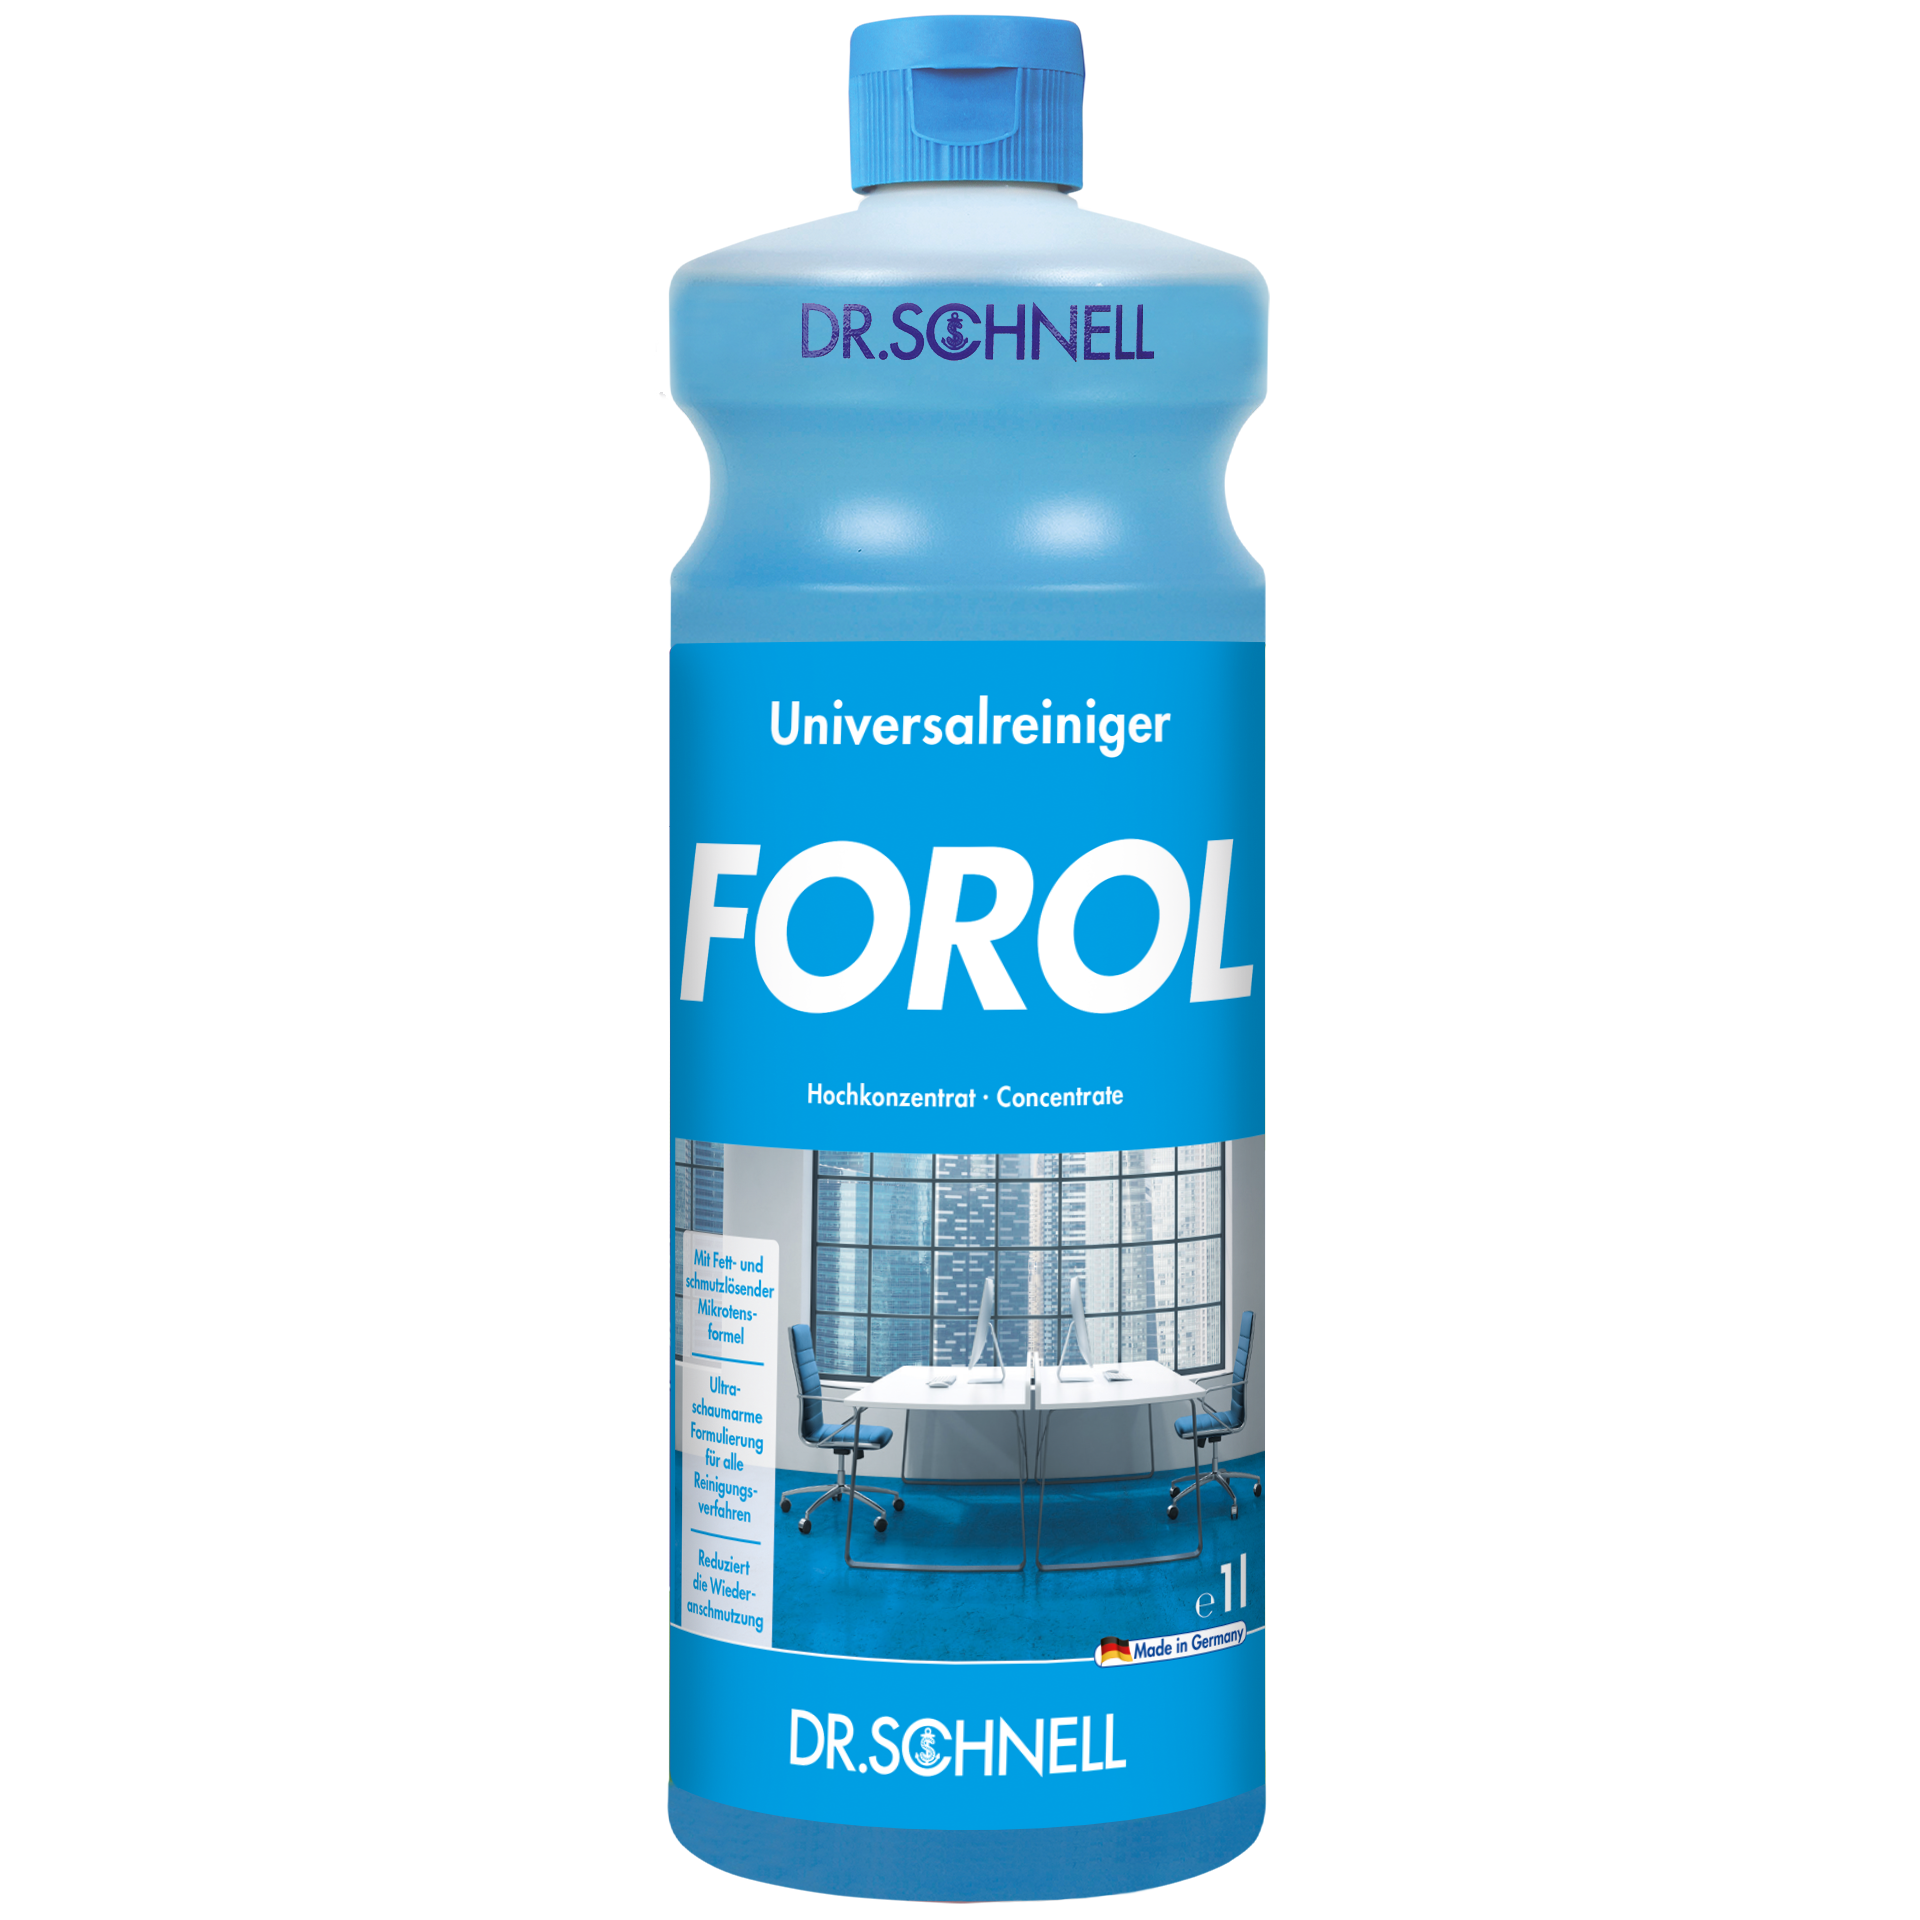 Dr. Schnell FOROL, Universalreiniger, 1 L Flasche